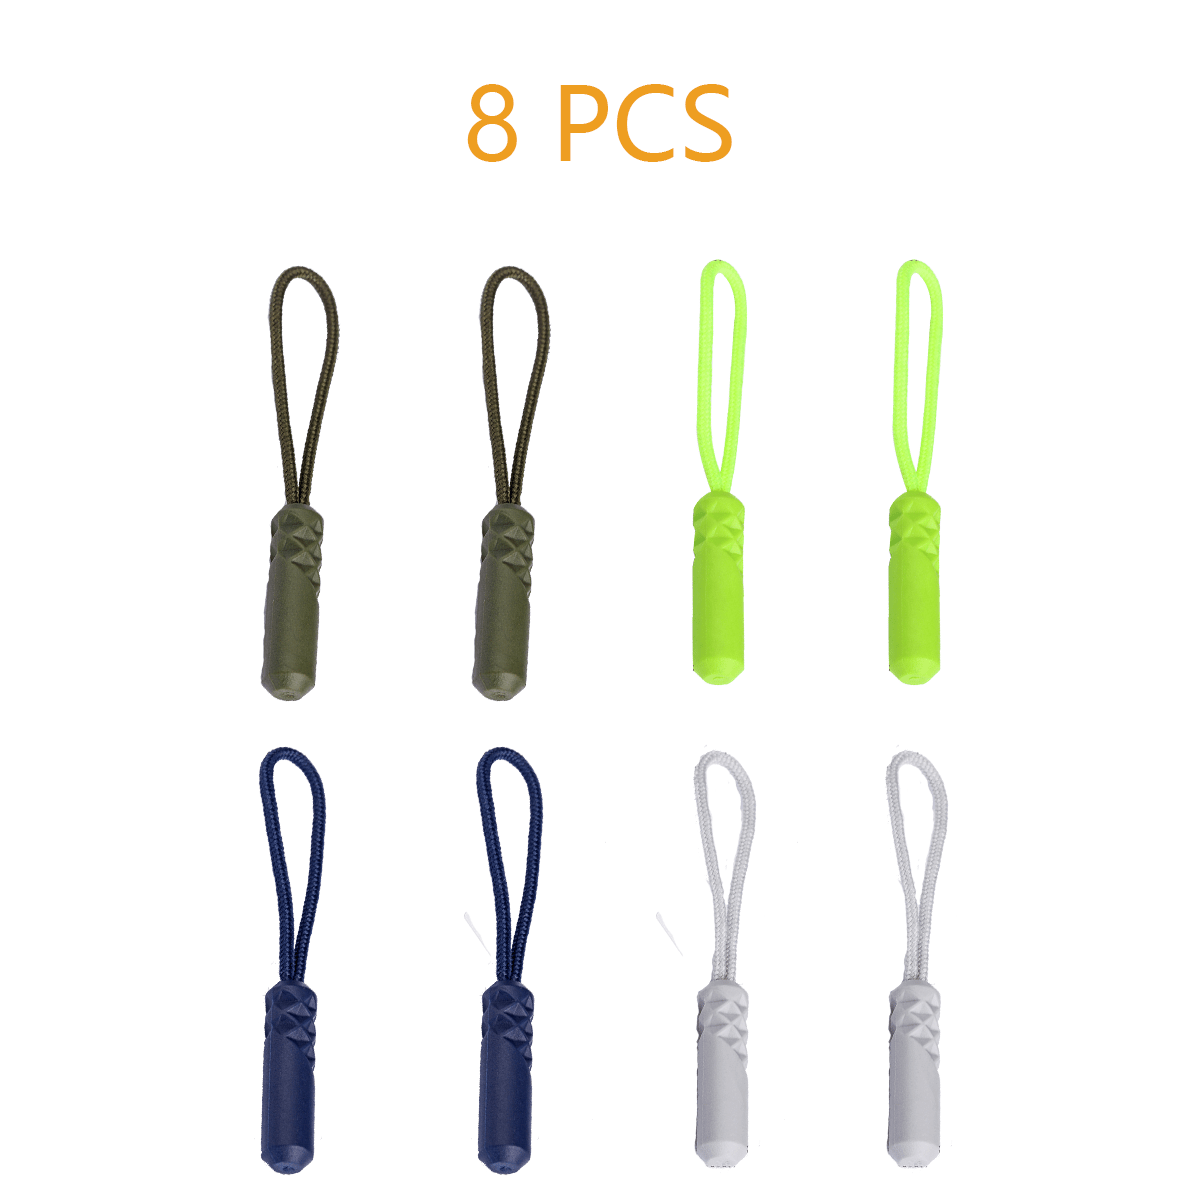 50 PCS Zipper Pulls, Replacement Nylon Cord Zipper Extension Pulls